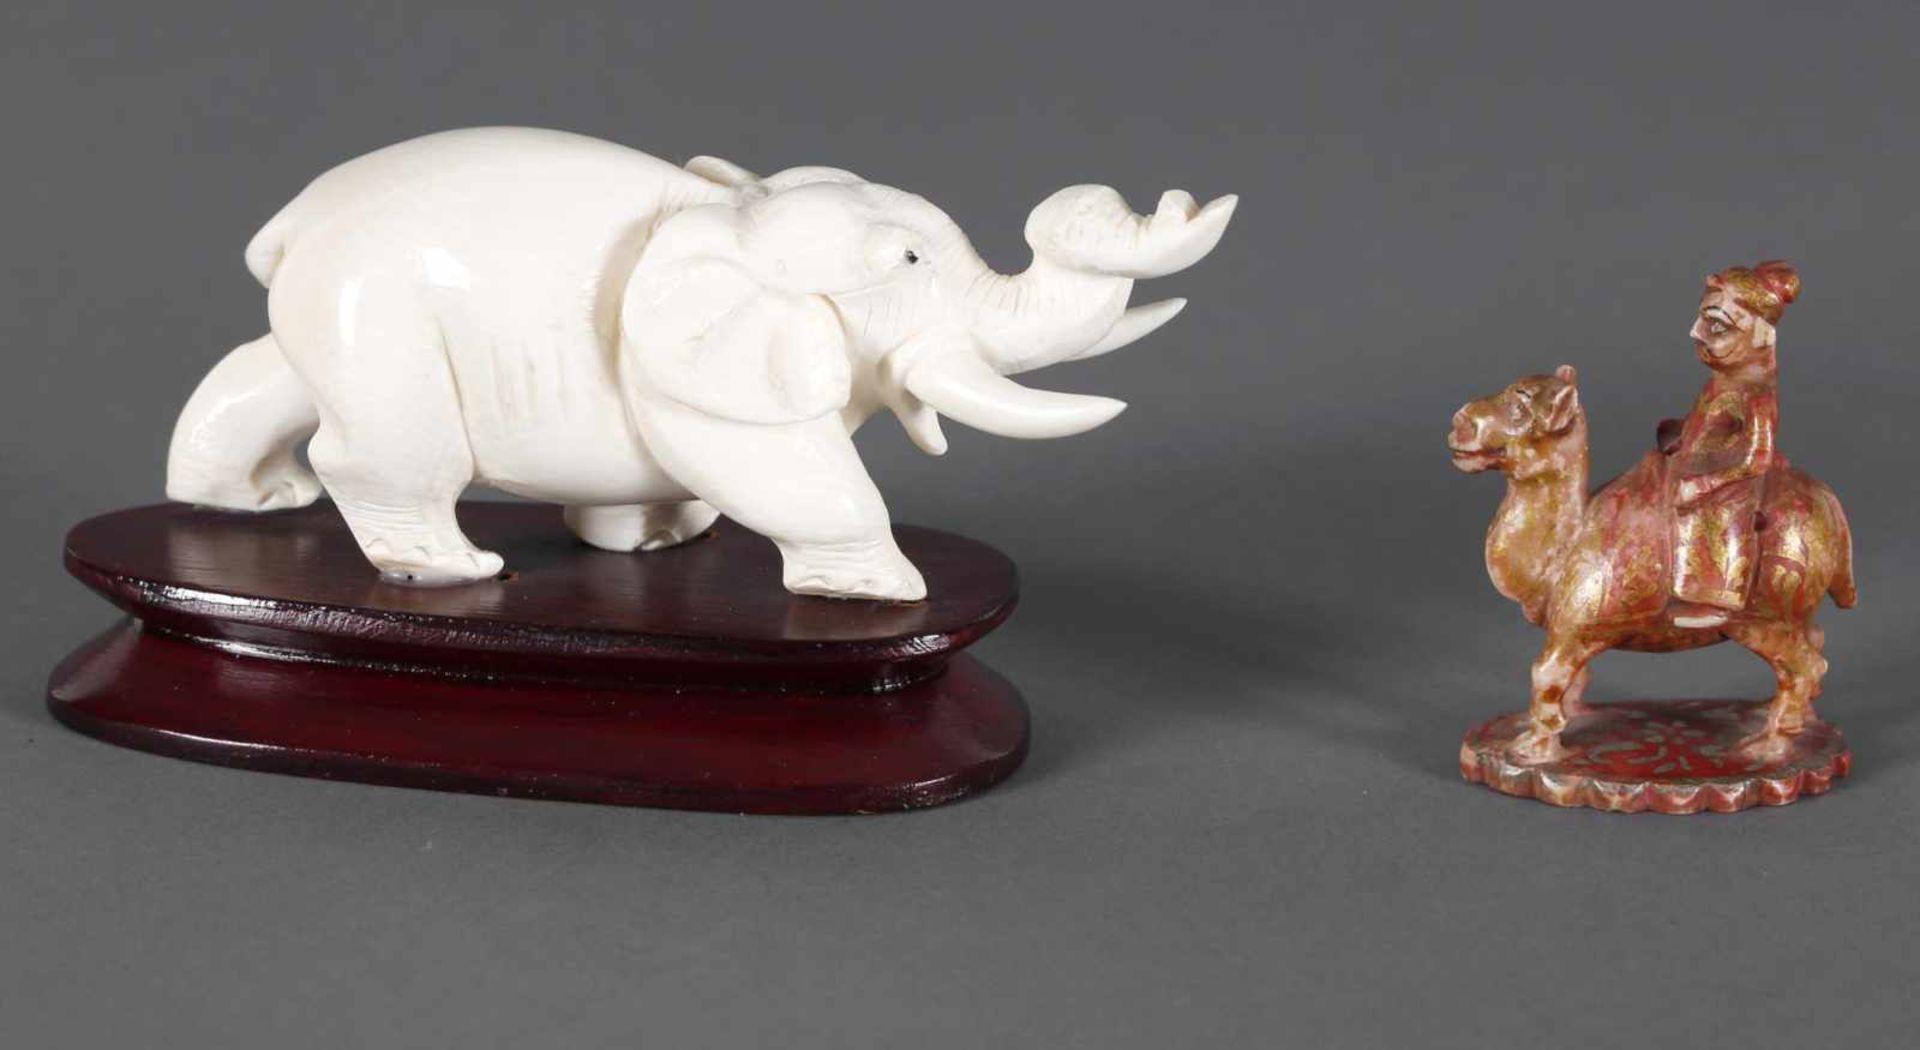 Zwei Einzelfiguren aus Elfenbein, um 1950-60darunter ein schreitender Elefant mit erhobenem - Bild 2 aus 2